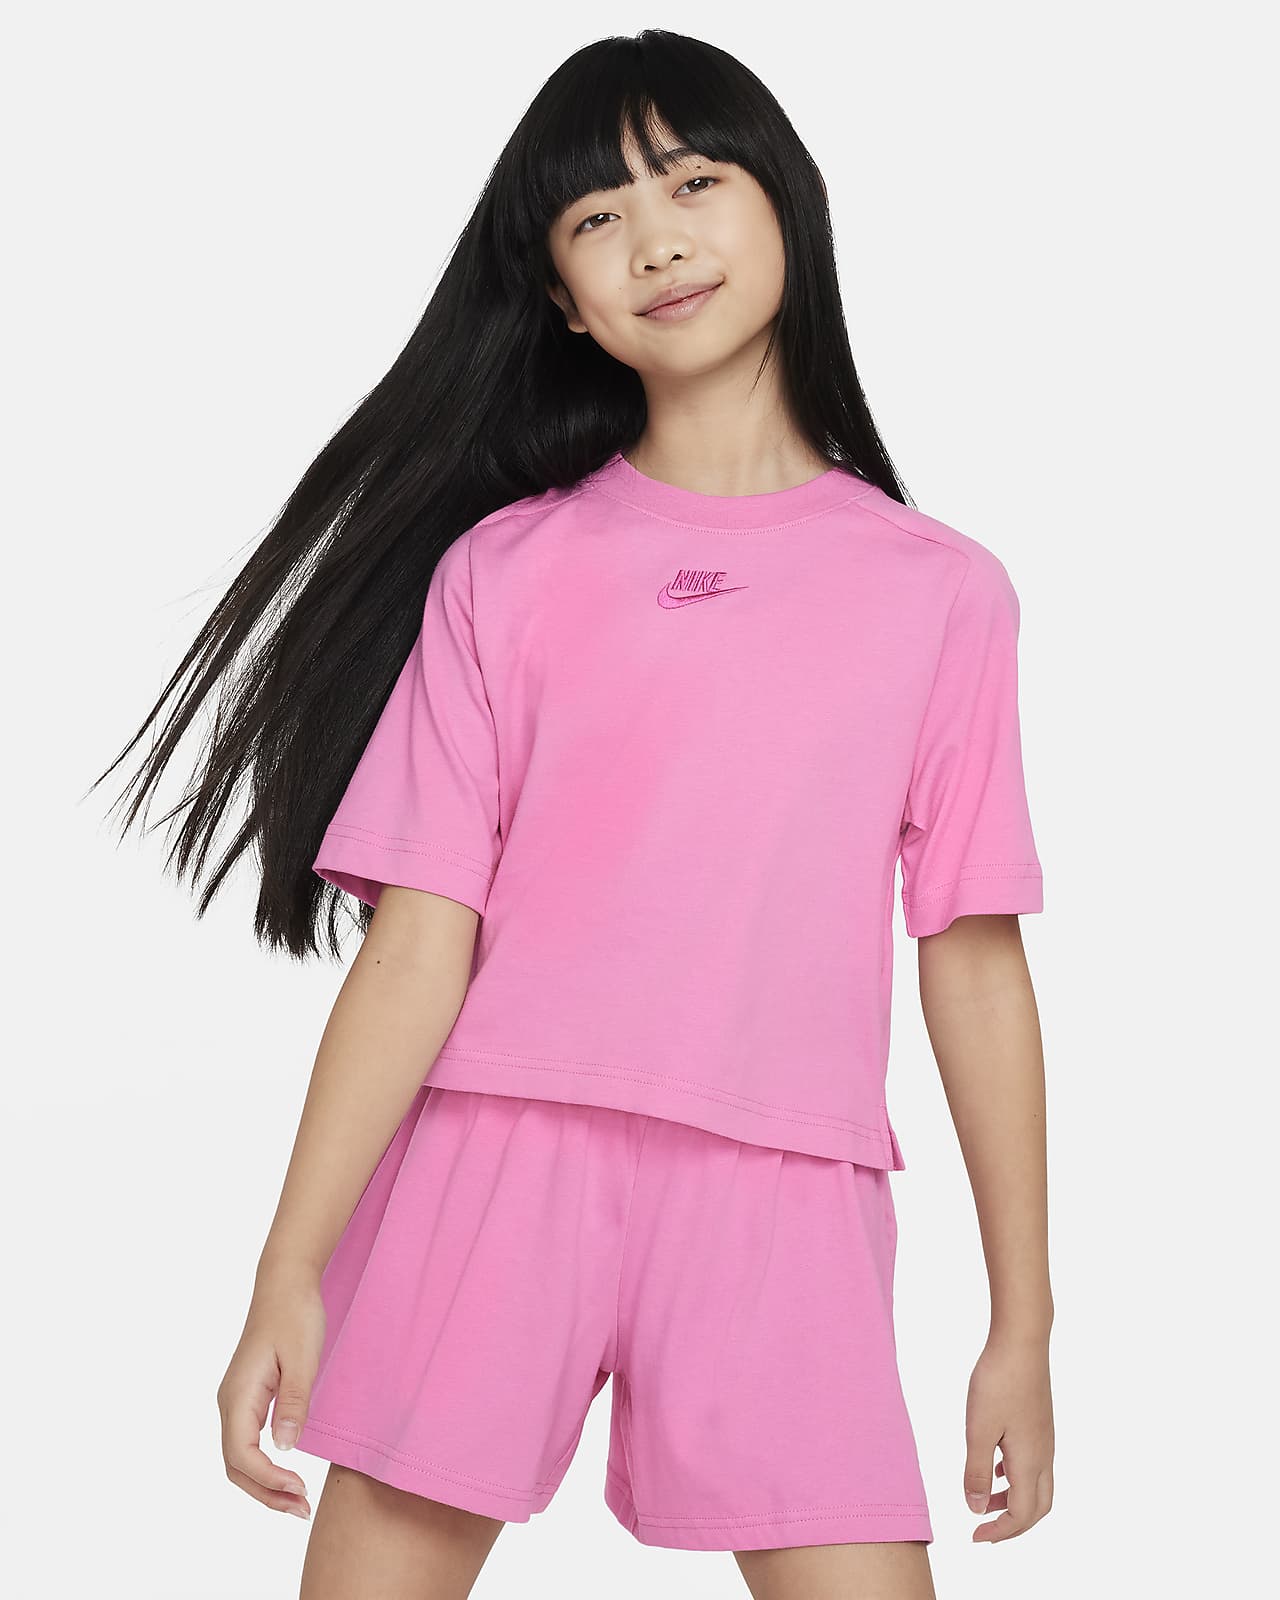 Nike Sportswear Older Kids' (Girls') Short-Sleeve Top